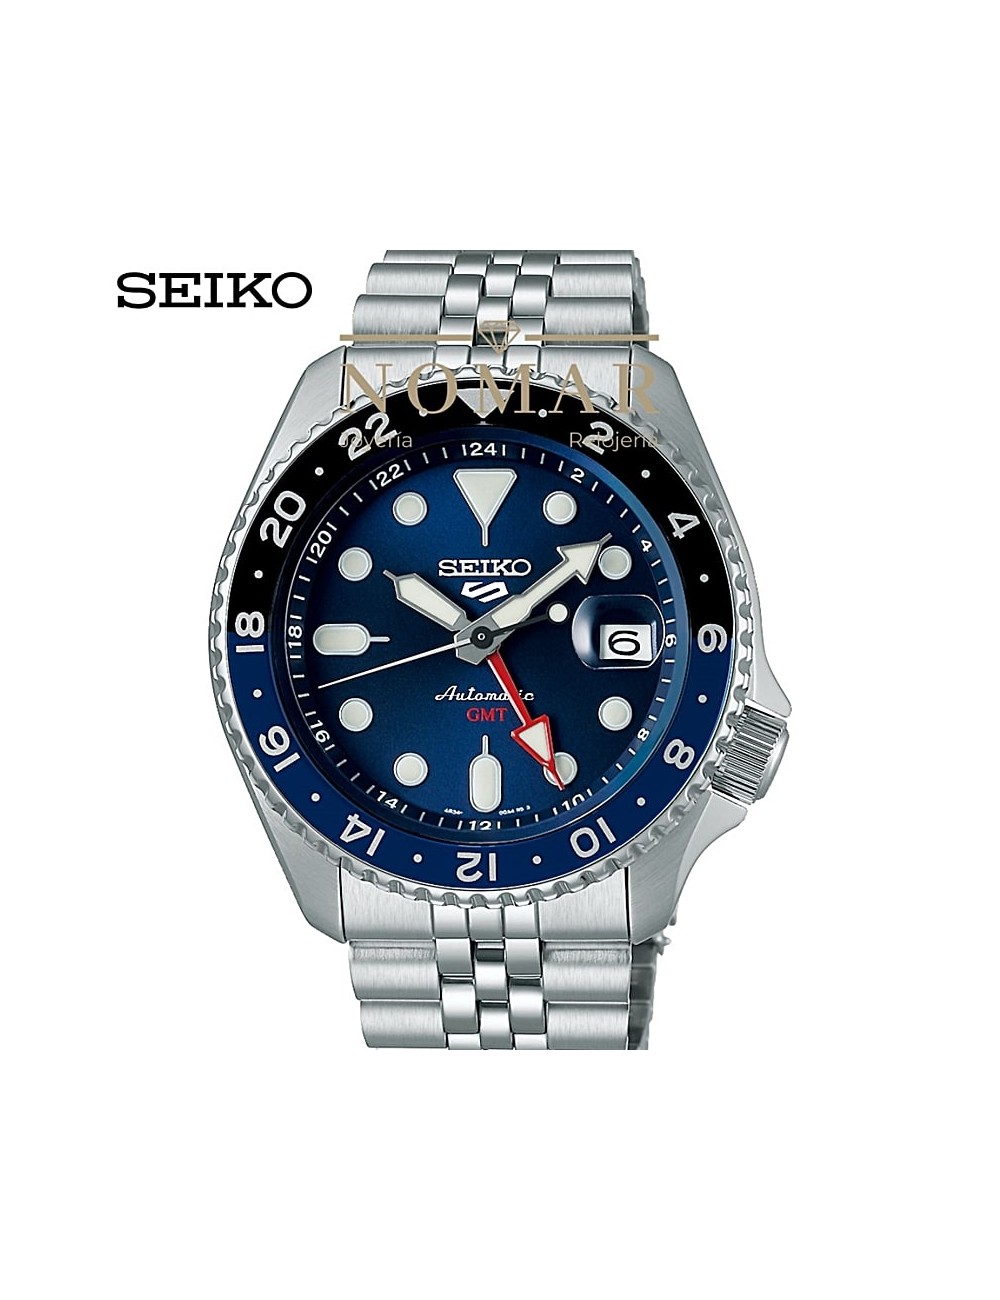 Reloj Seiko Hombre Seiko 5 Sports Style Gmt Analógico automático acero